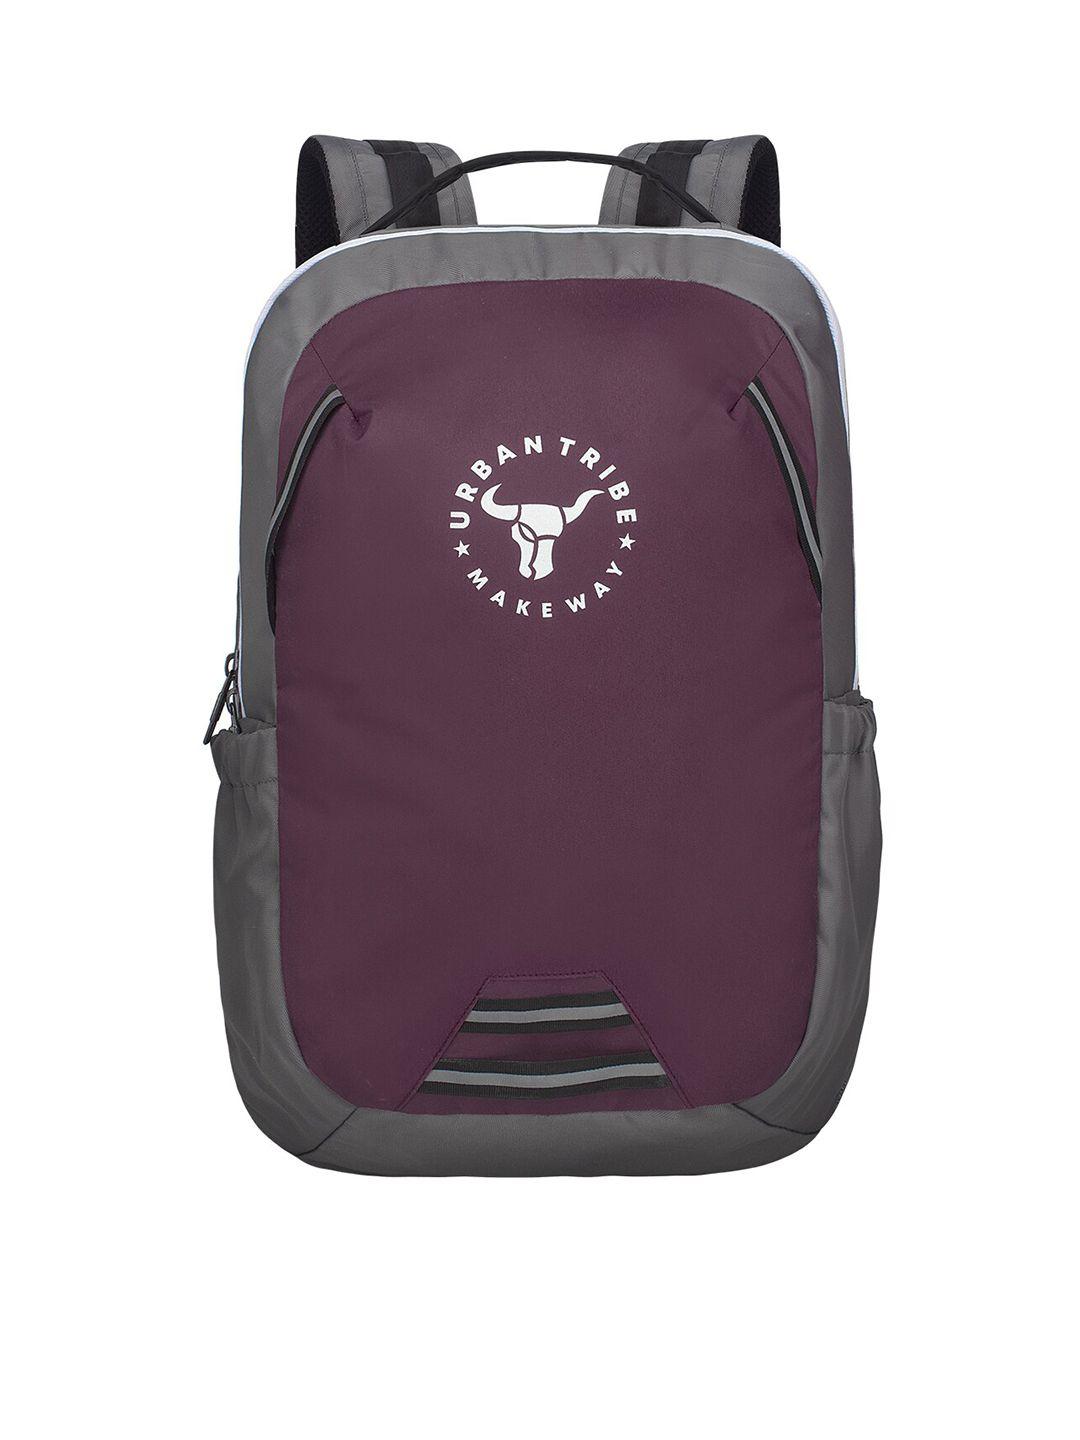 urban tribe brand logo printed backpack